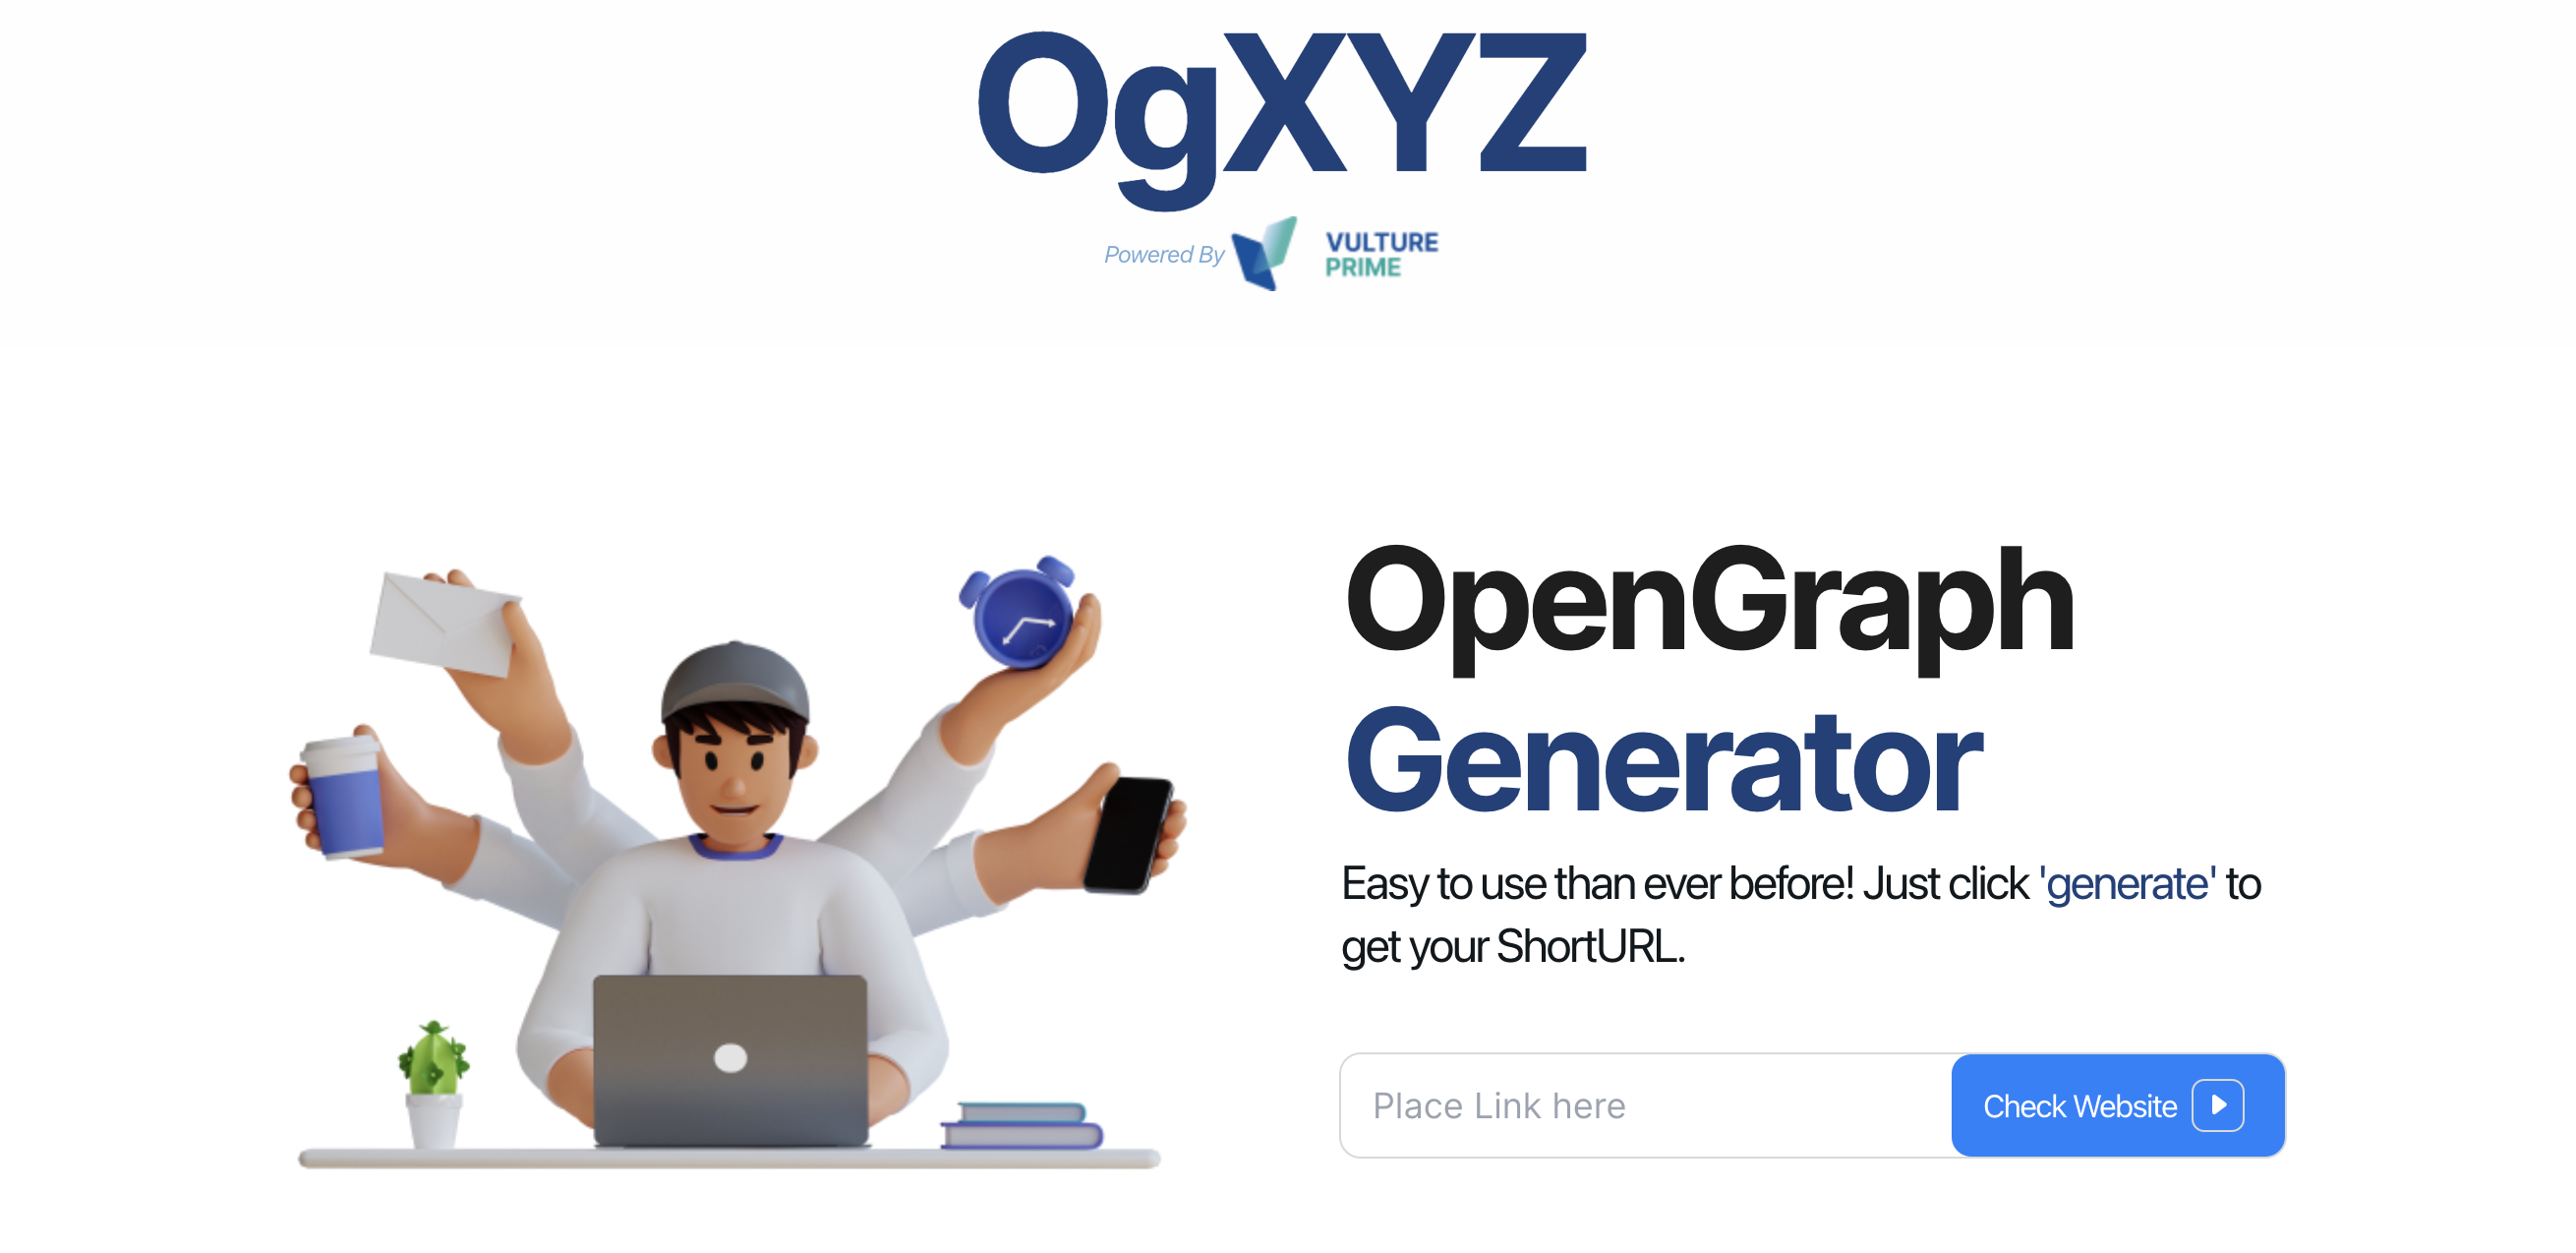 ogXYZ เครื่องมือสร้า Open Graph ที่รับการใช้งานได้เยอะ ไม่ล่ม